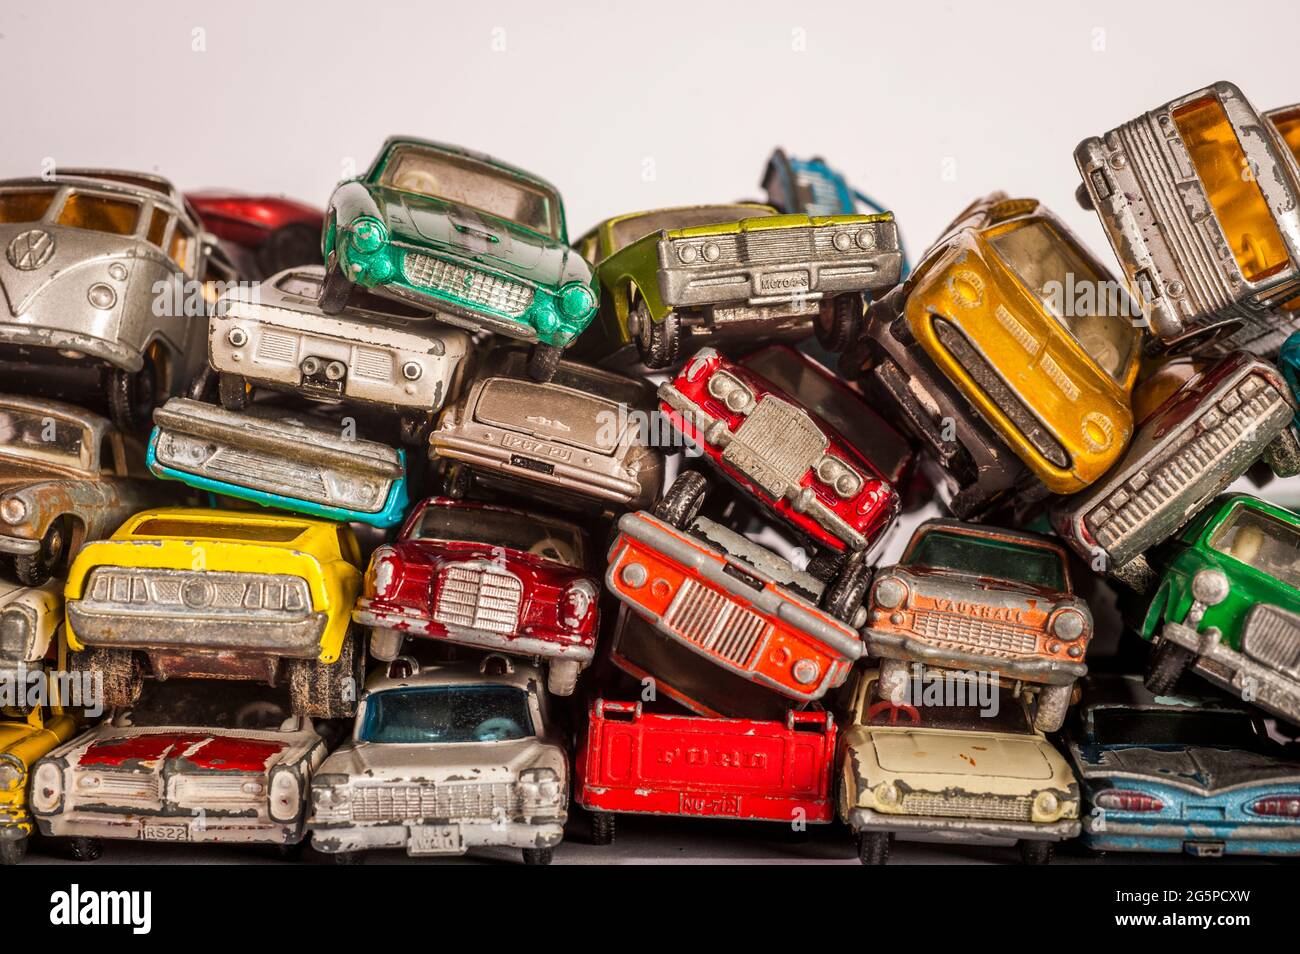 Spielzeug-Auto Der 70er Jahre, Hersteller Matchbox/Lesney. Foto de stock